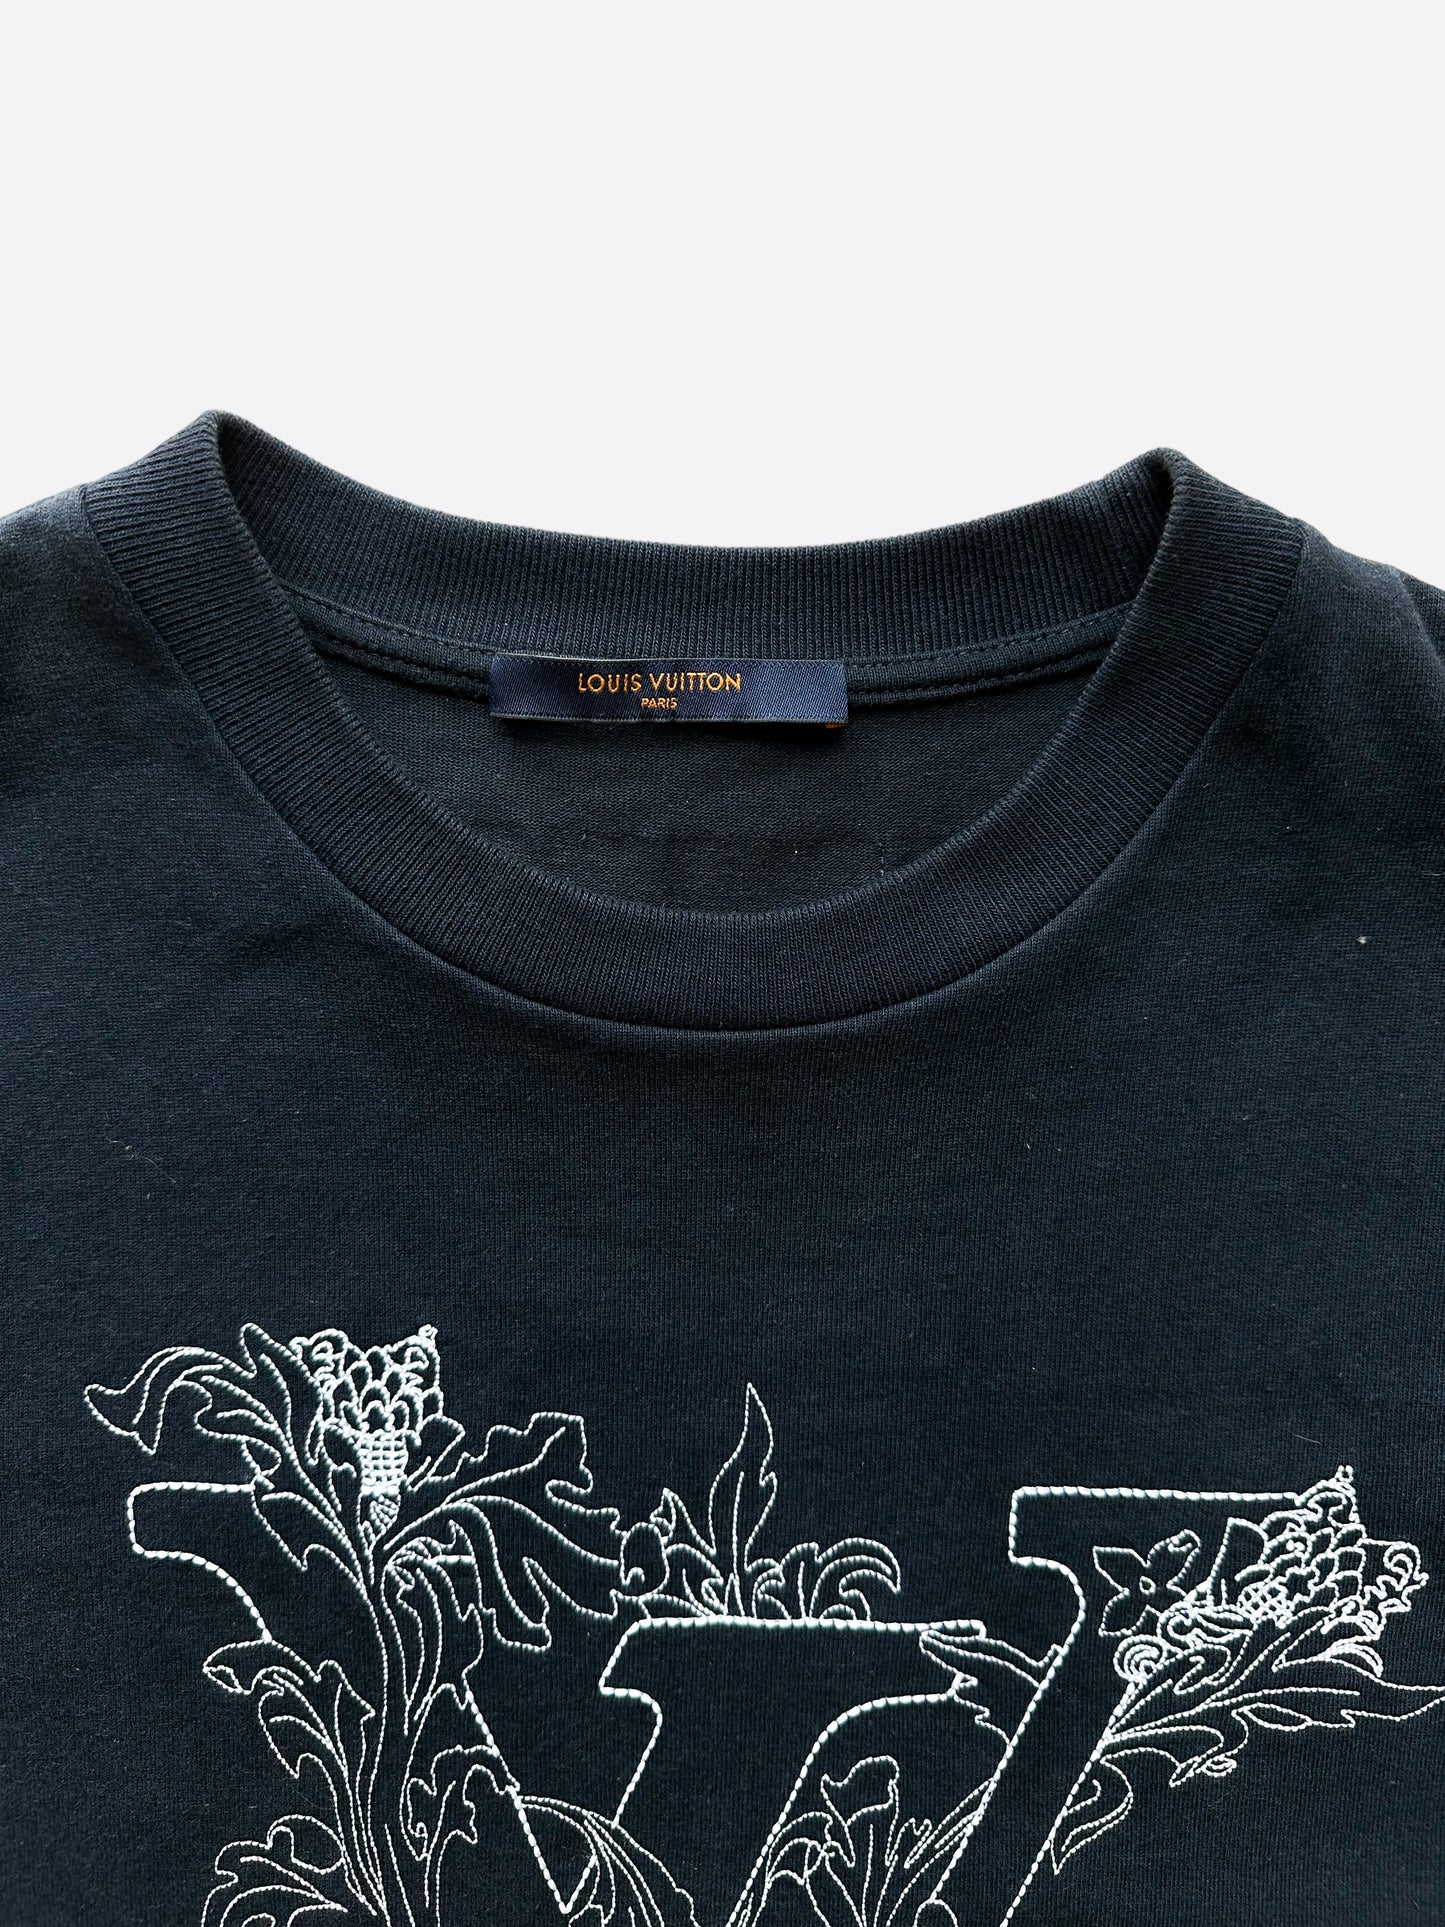 Floral Louis Vuitton Logo Shirt - Vintage & Classic Tee